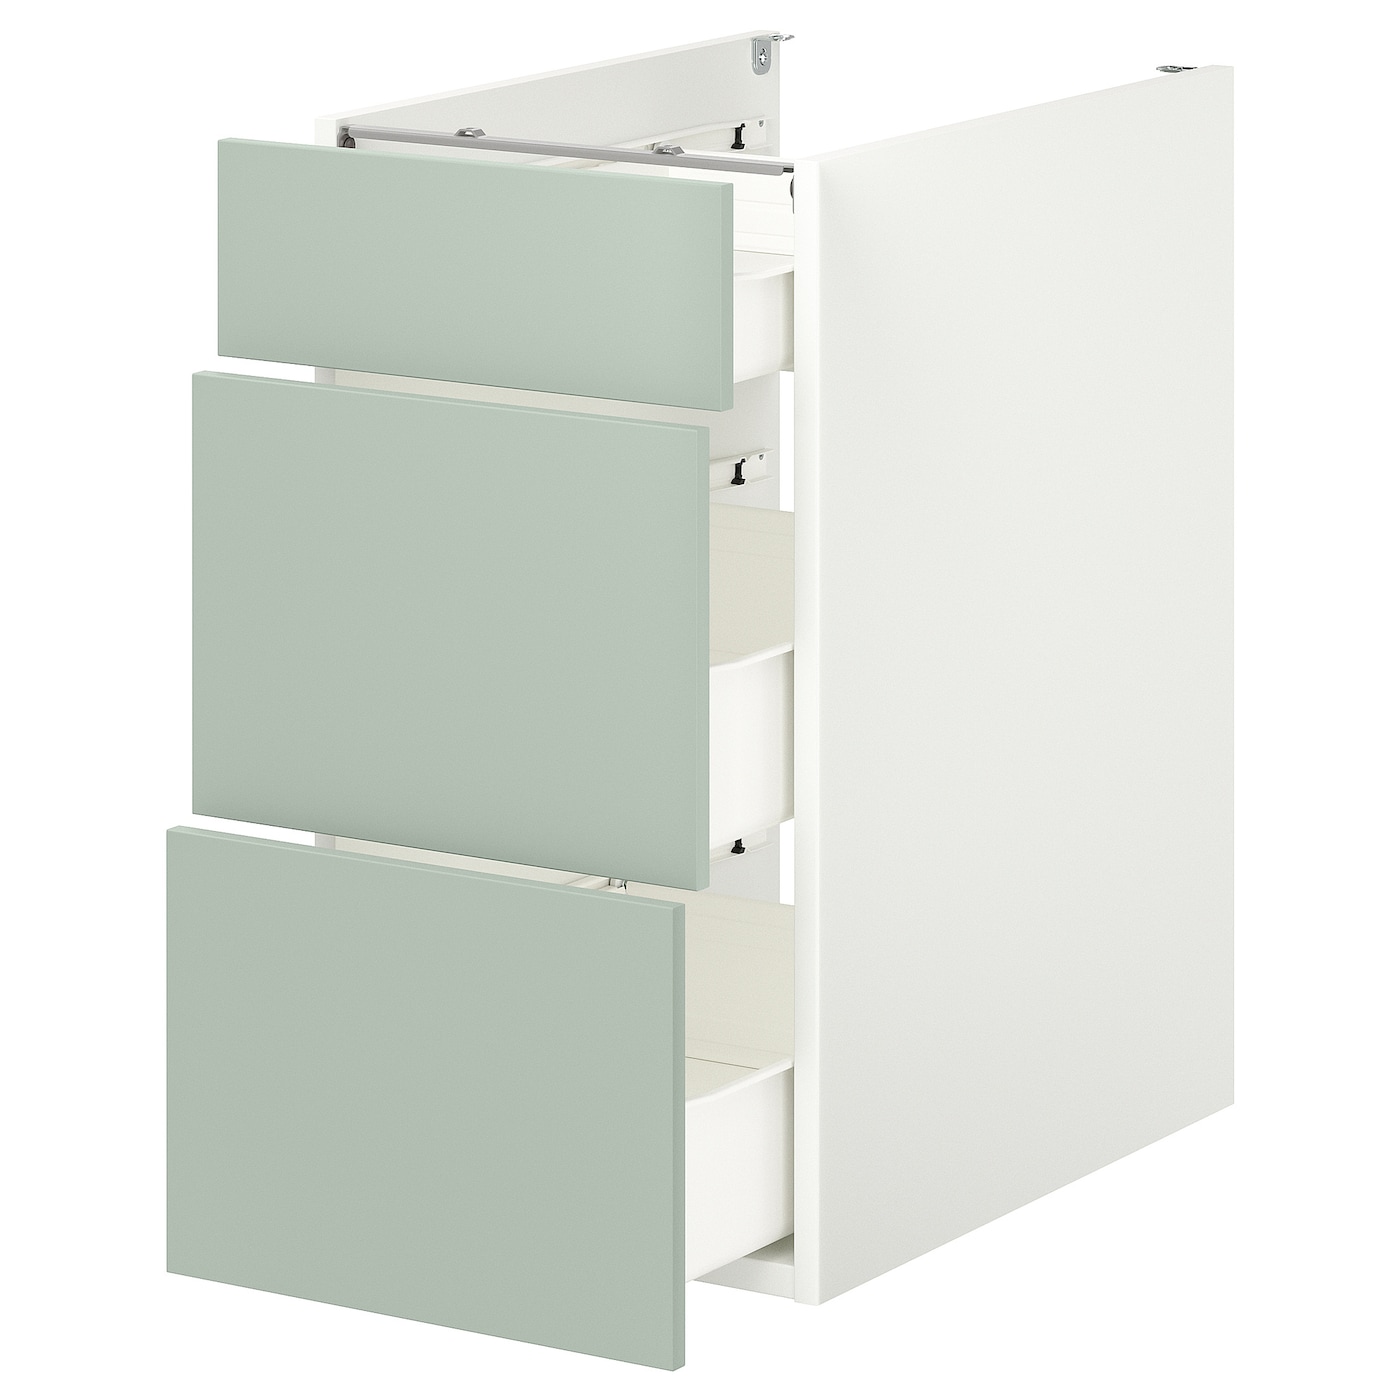 Напольный шкаф с ящиками - IKEA ENHET, 75x62x40см, белый/светло-серый, ЭХНЕТ ИКЕА